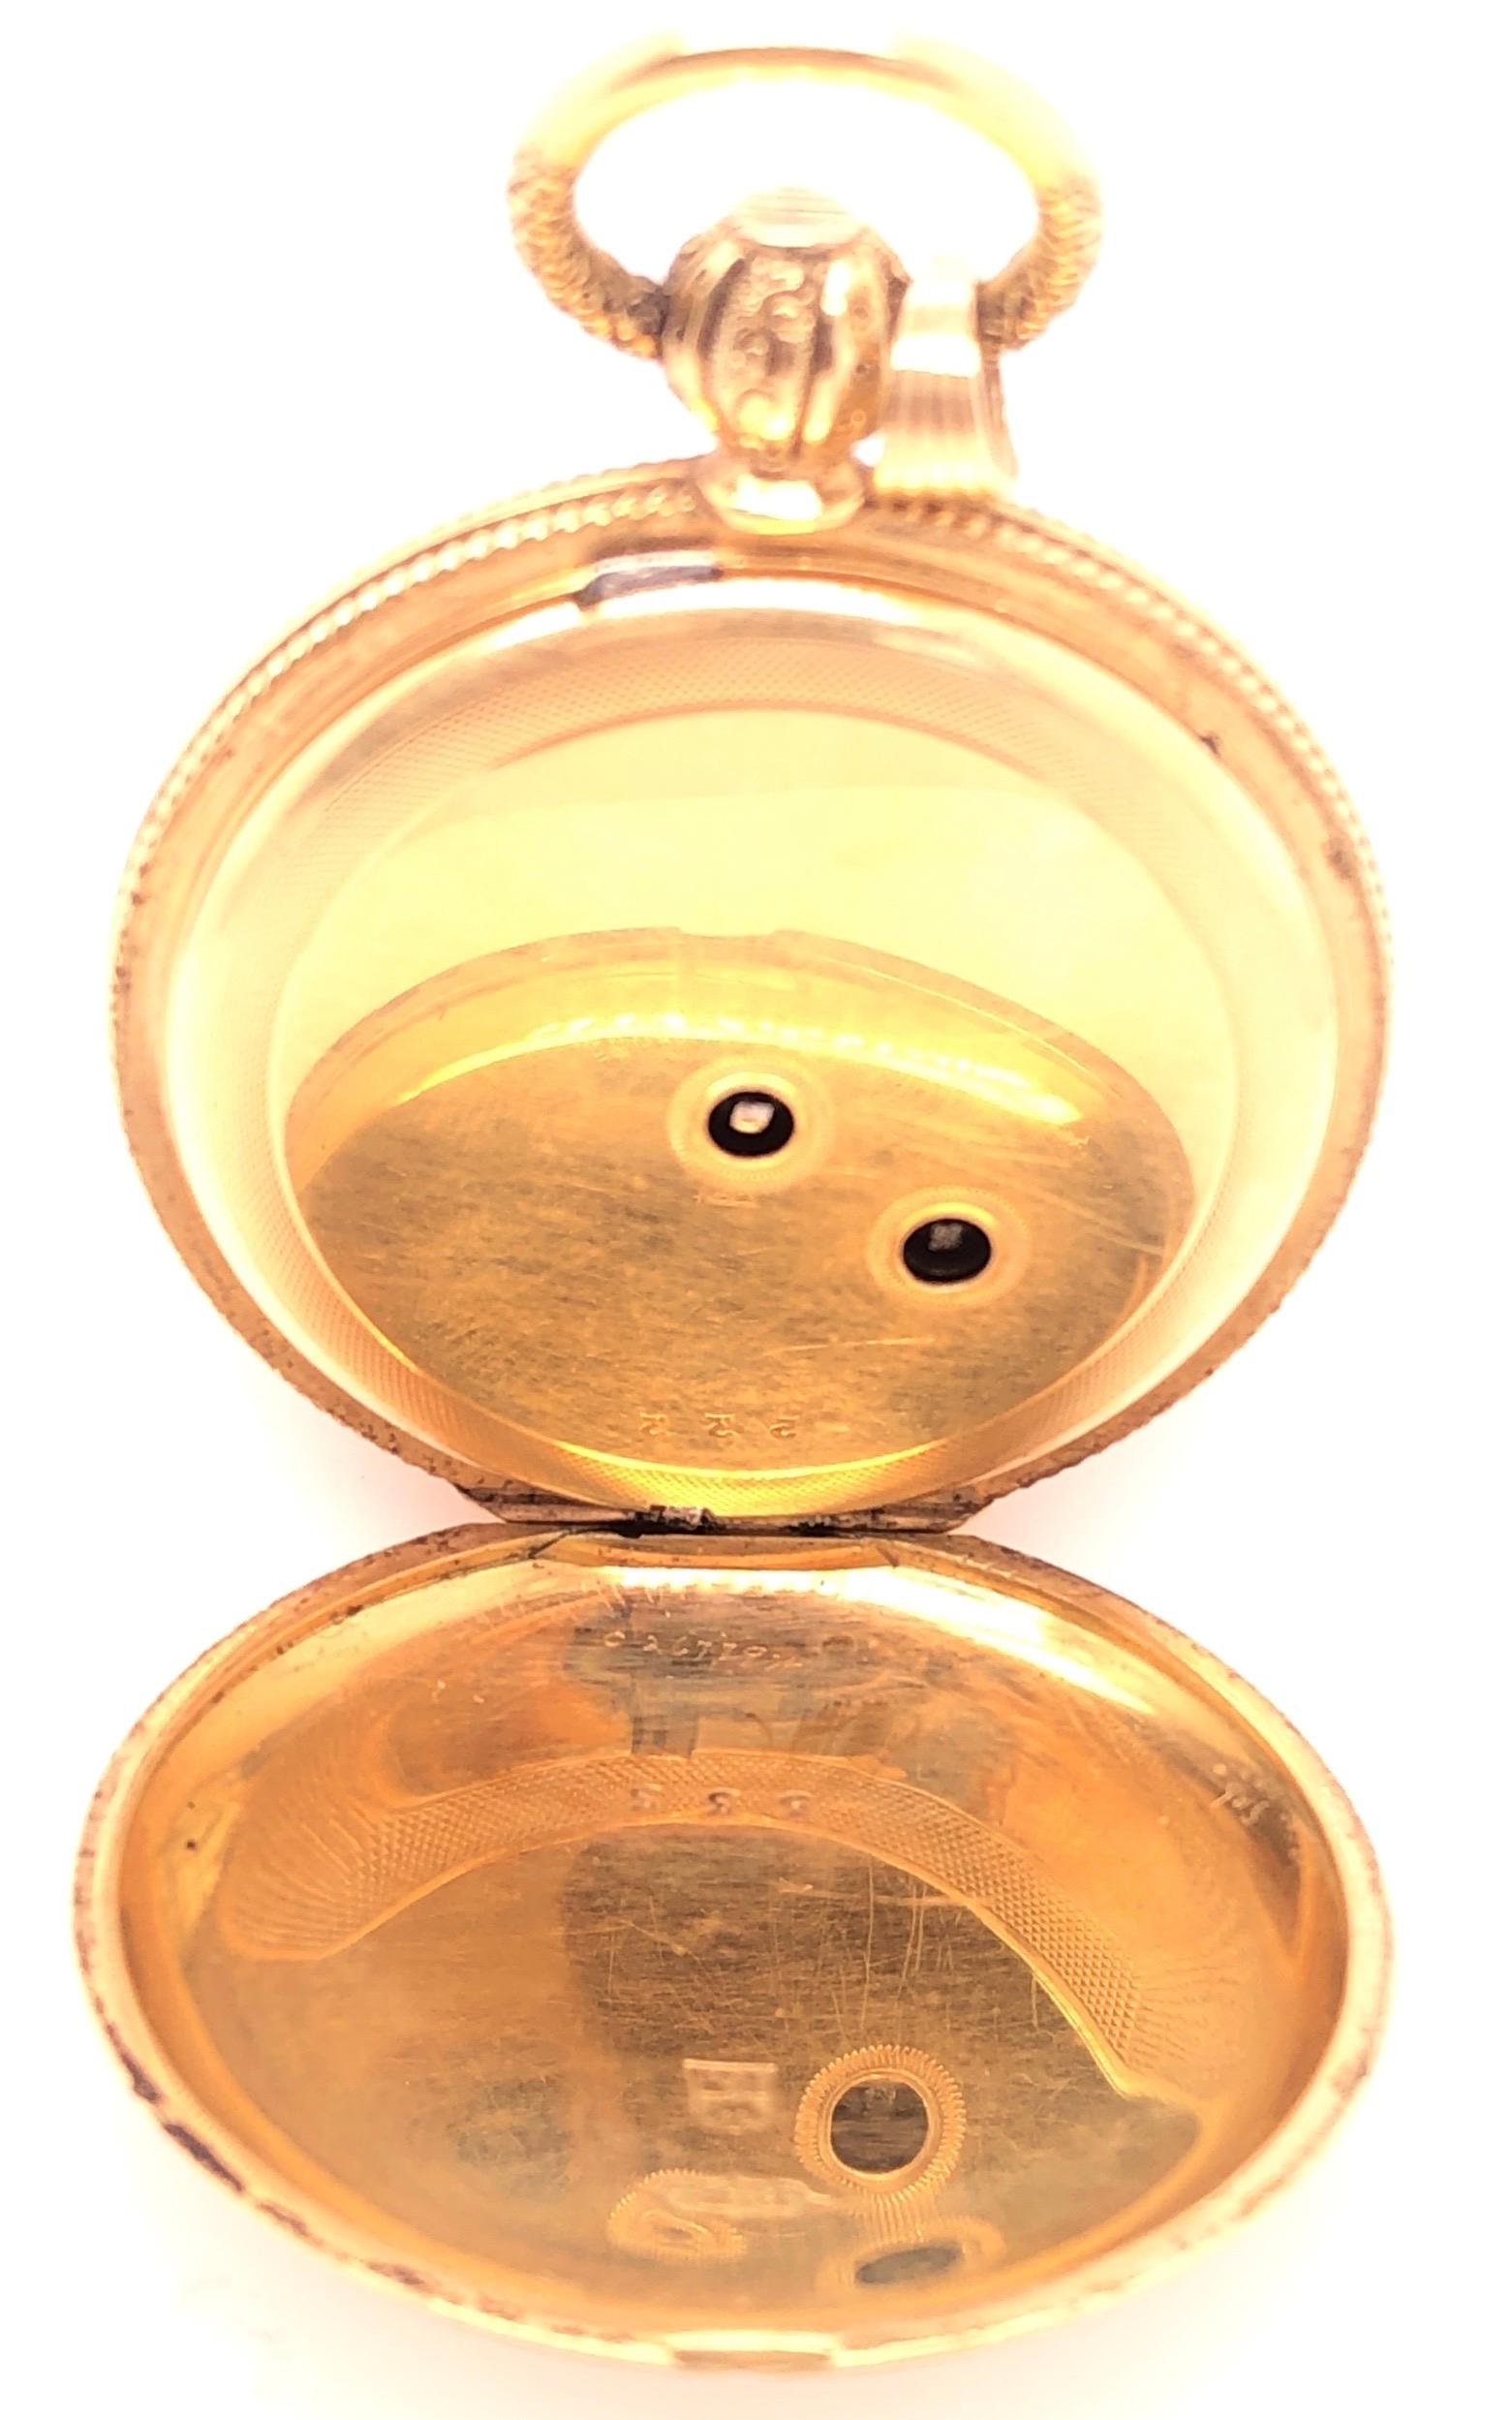 Belle Époque 18 Karat Yellow Gold Antique Breguet Paris Pocket Watch with Porcelain Dial